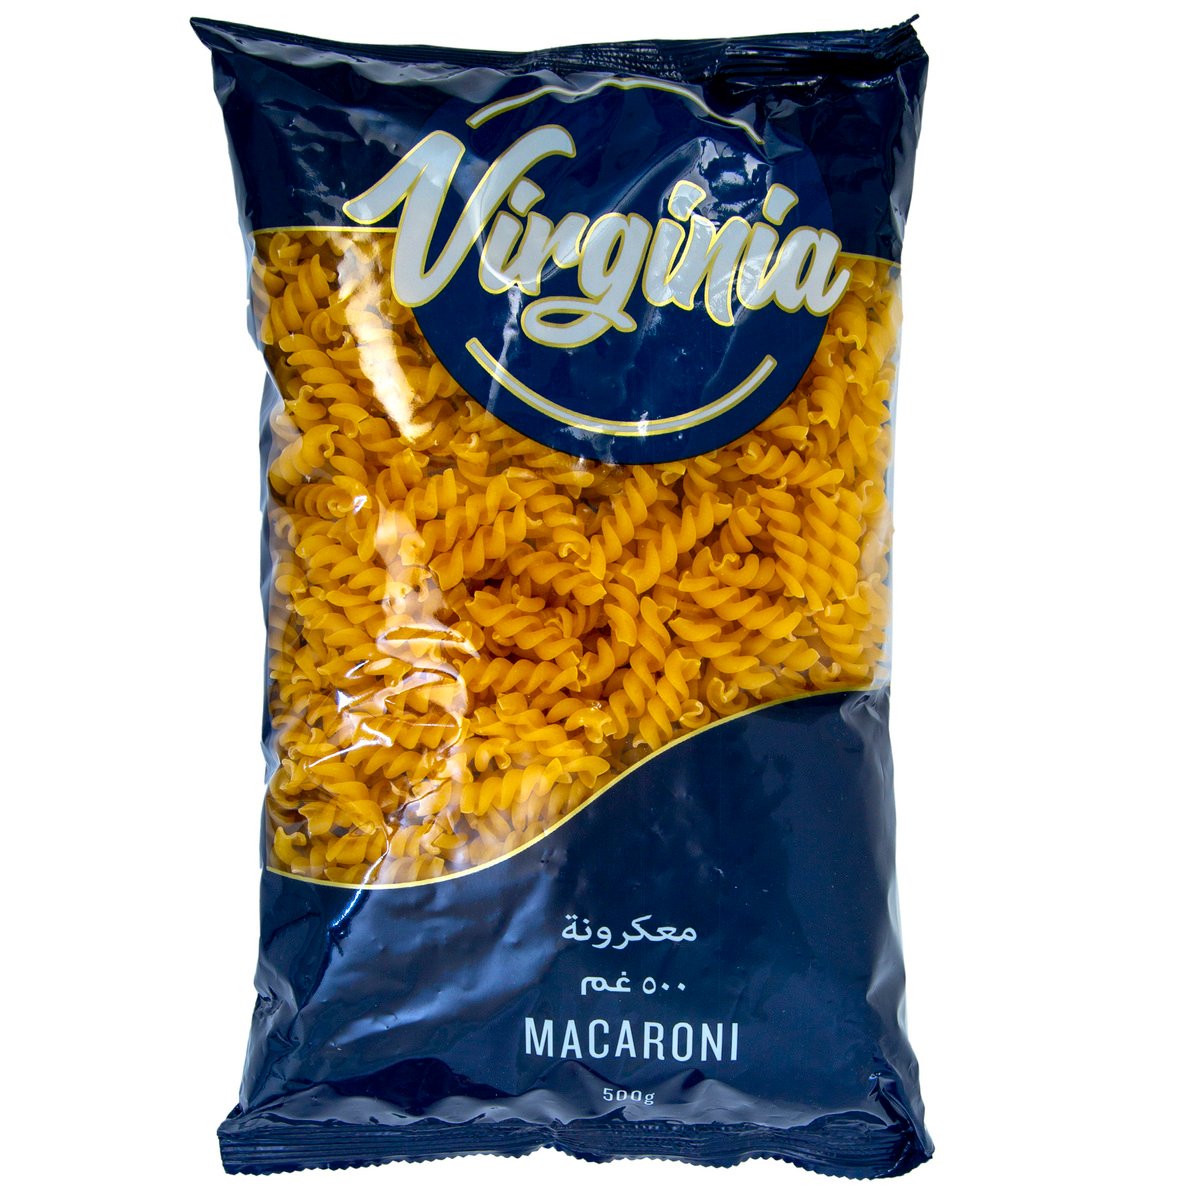 Virginia Macaroni No.61 500 g